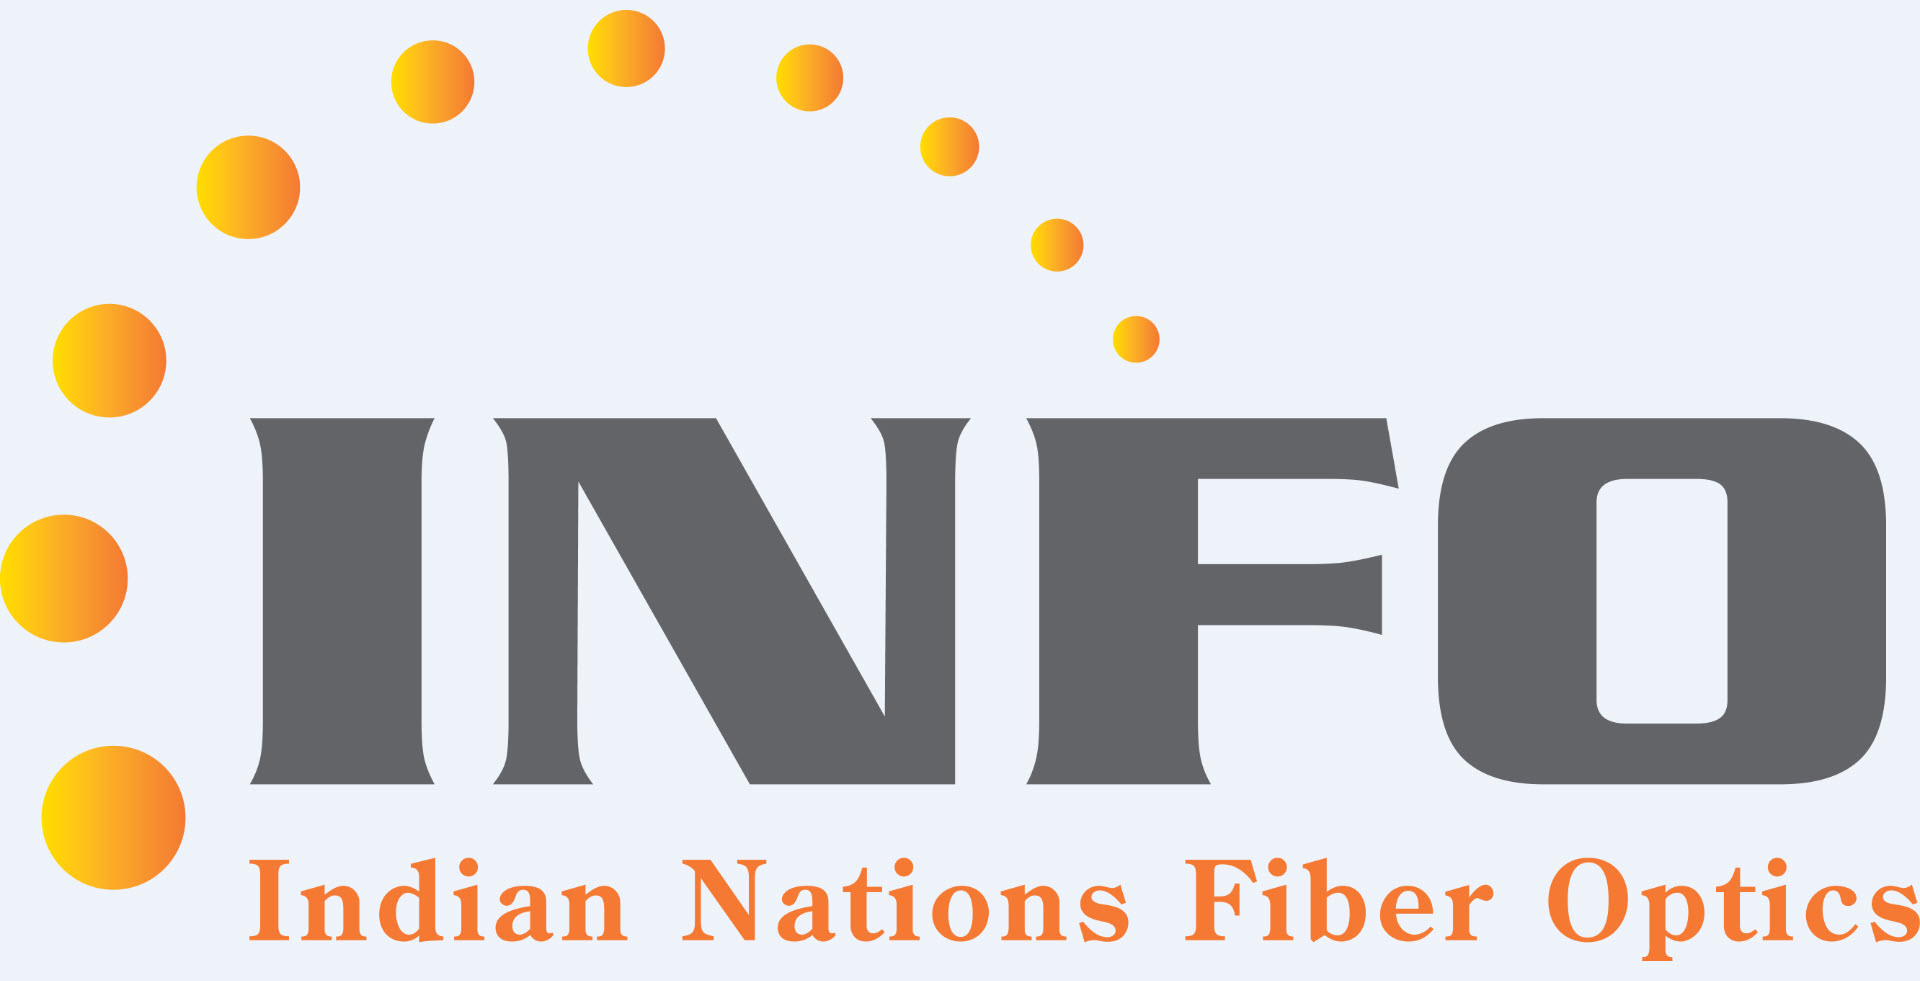 Indian Nations Fiber Optics